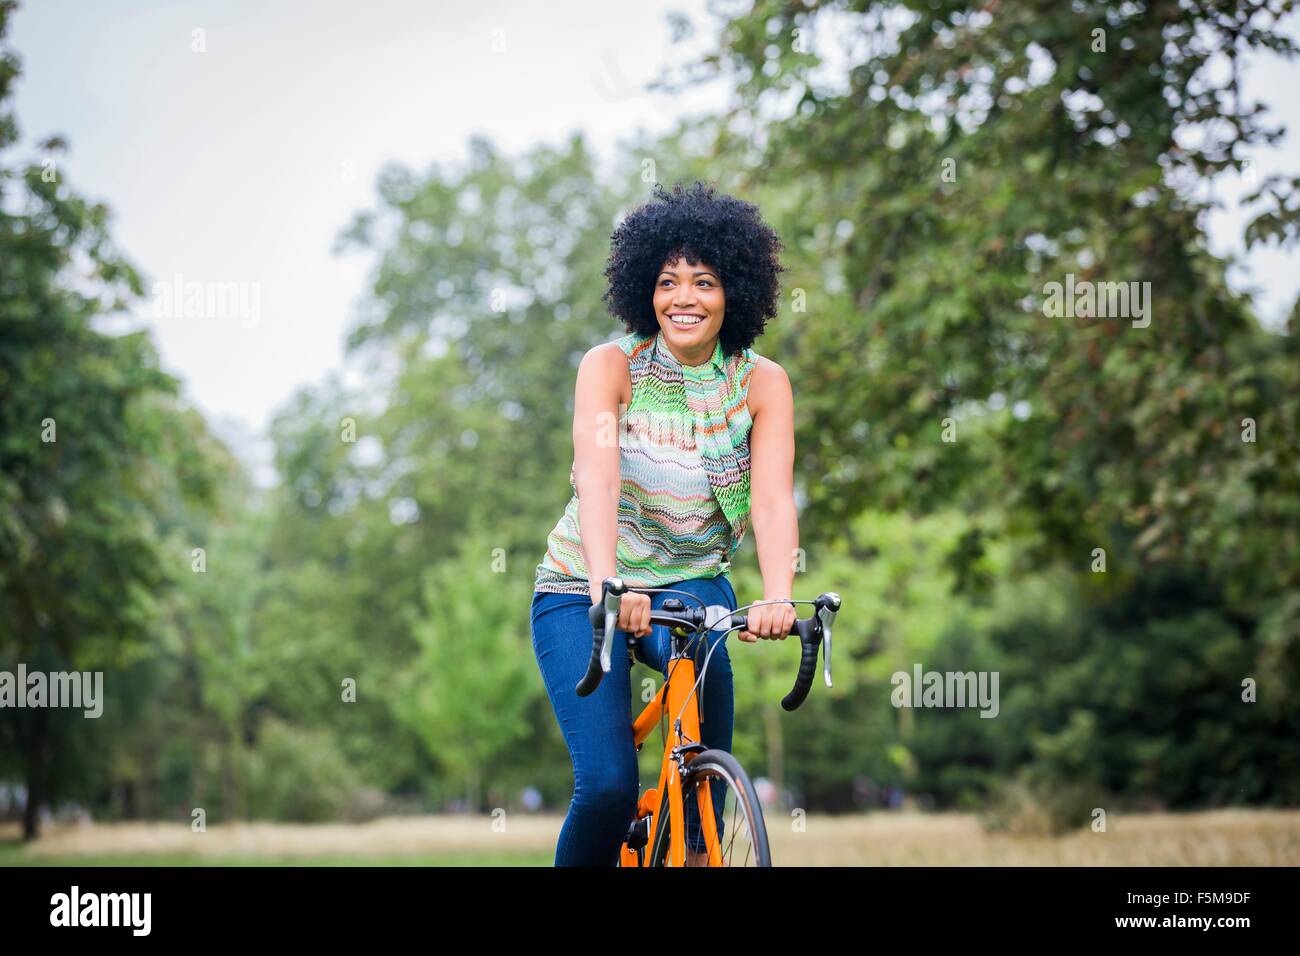 Vista frontal de la mujer madura con afro montando bicicleta mirando lejos sonriendo Foto de stock